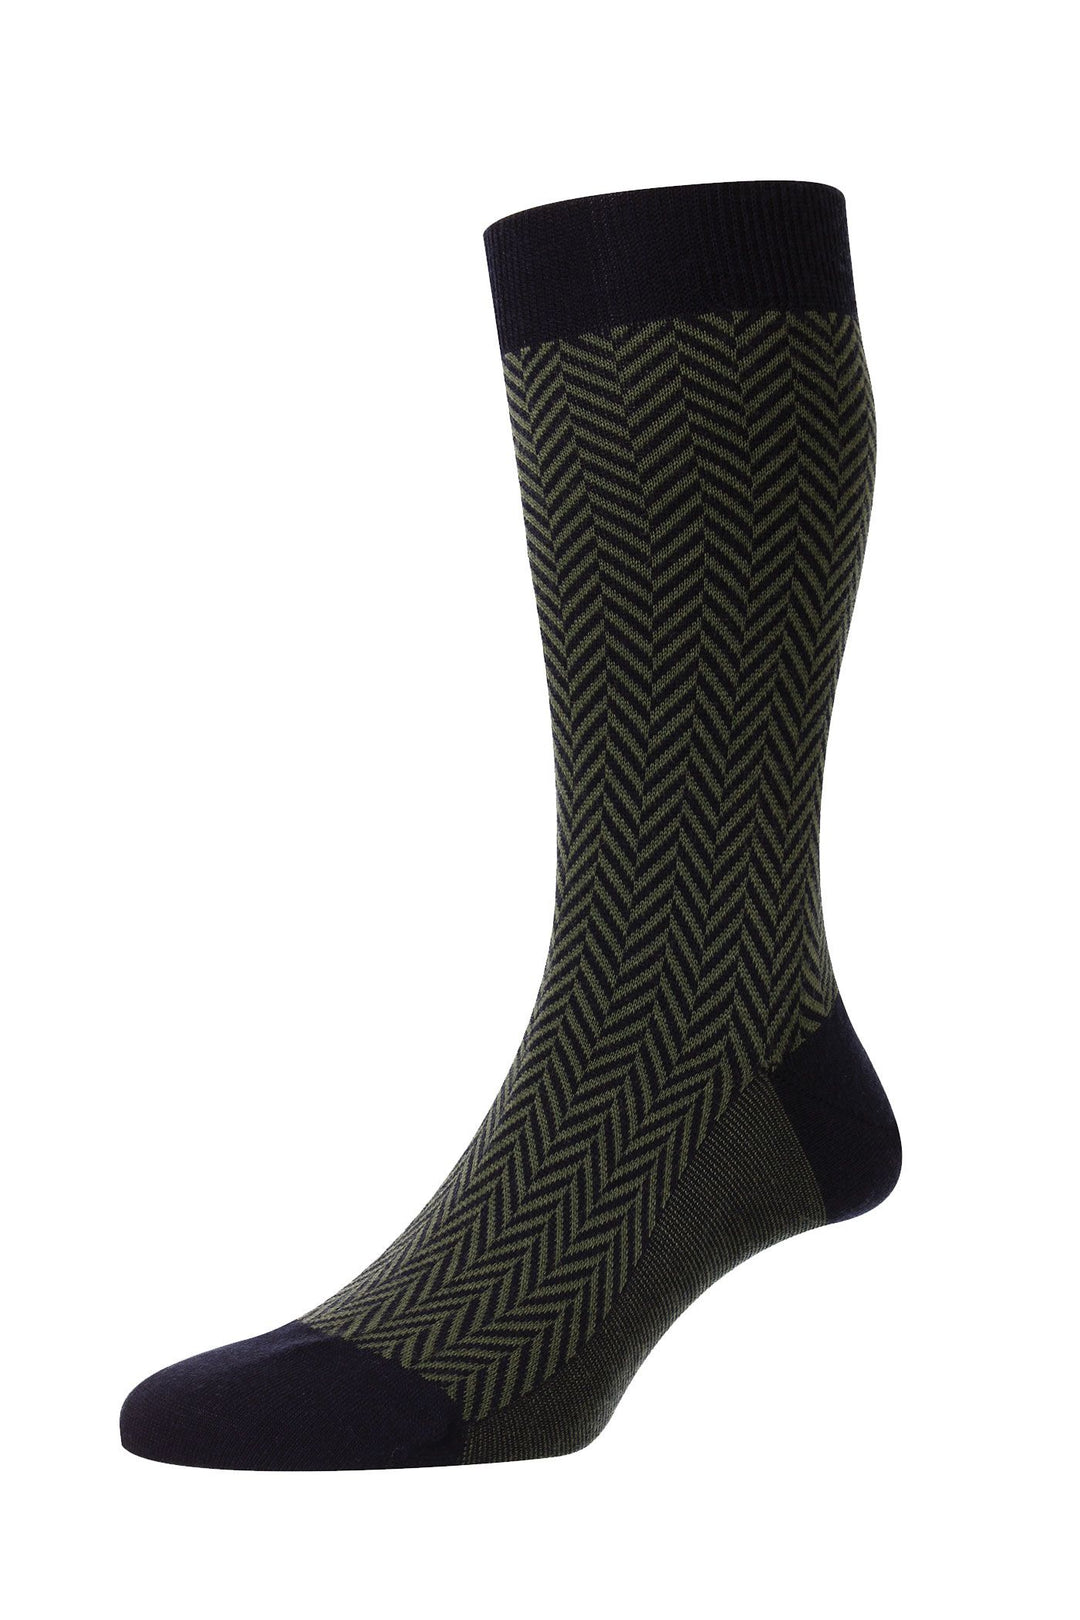 Pantherella Hendon Herringbone Merino Wool Socks